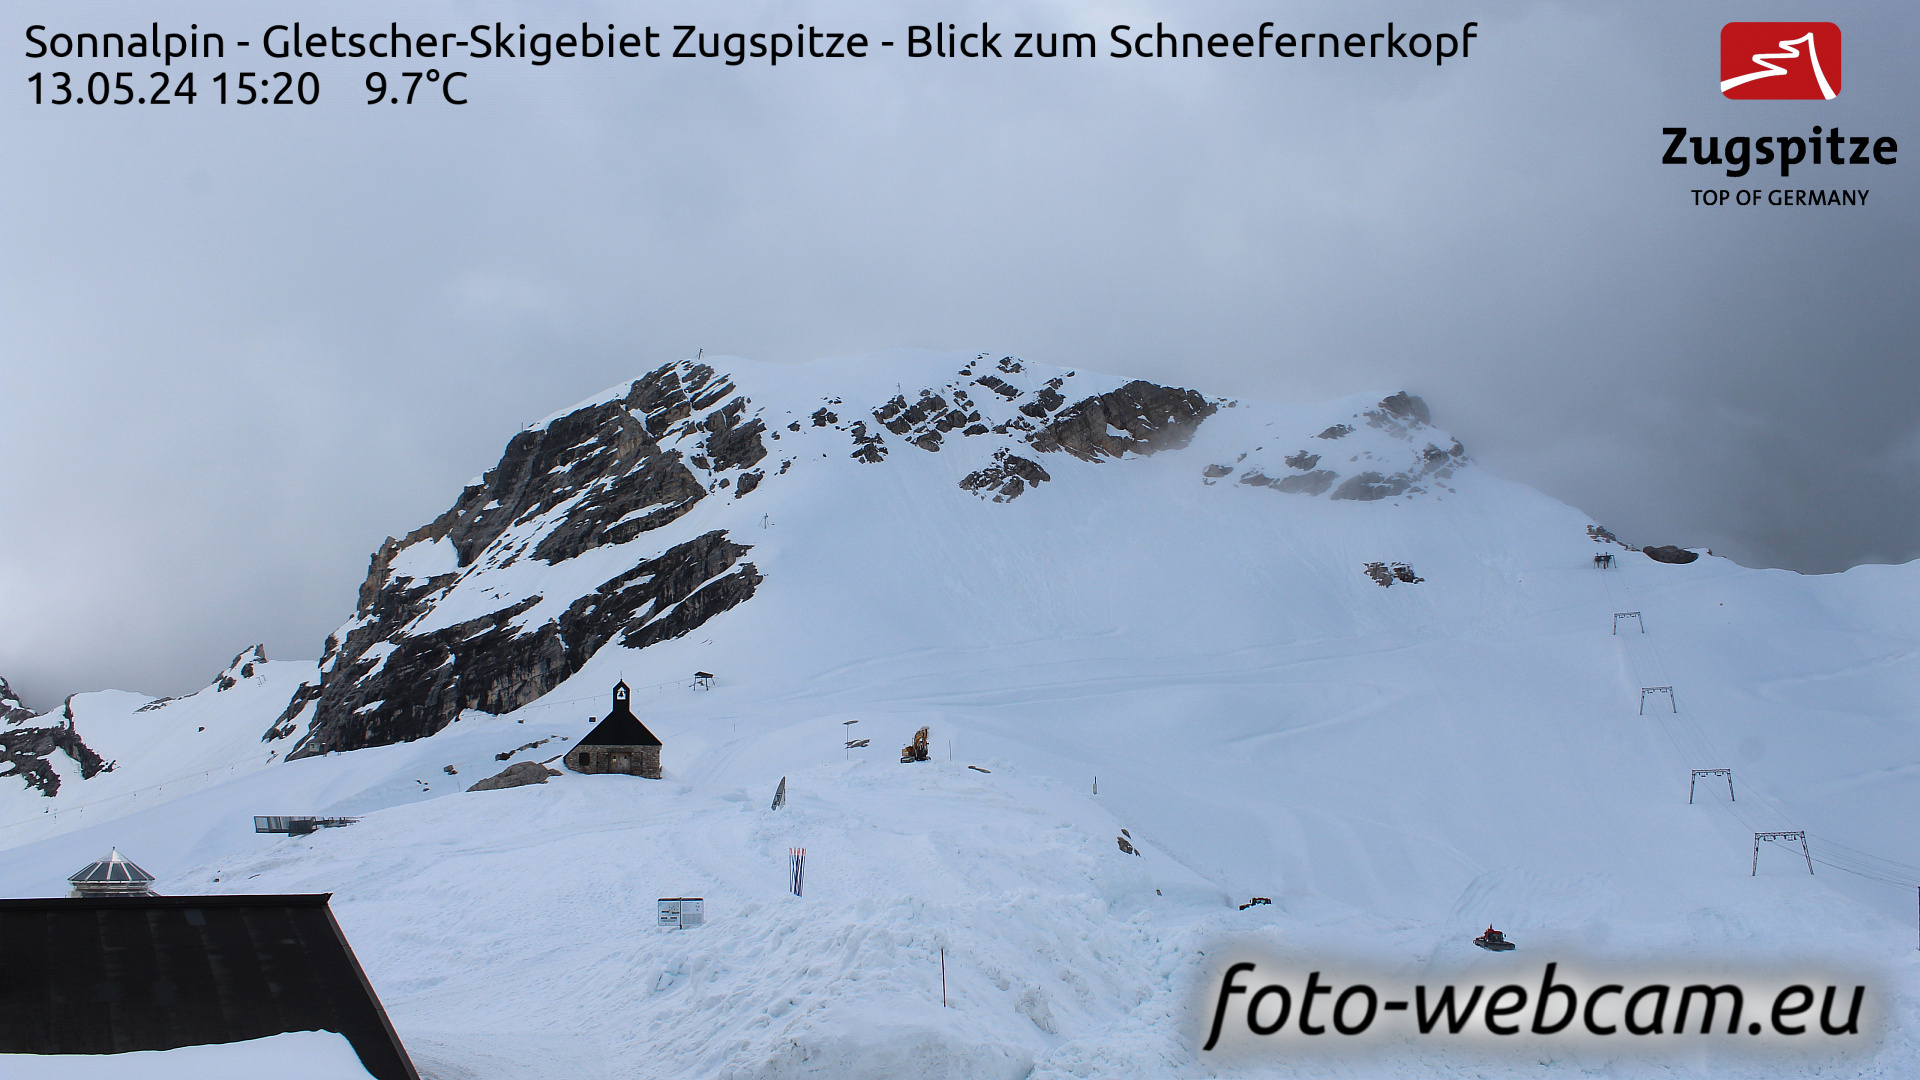 Zugspitze Wed. 15:24